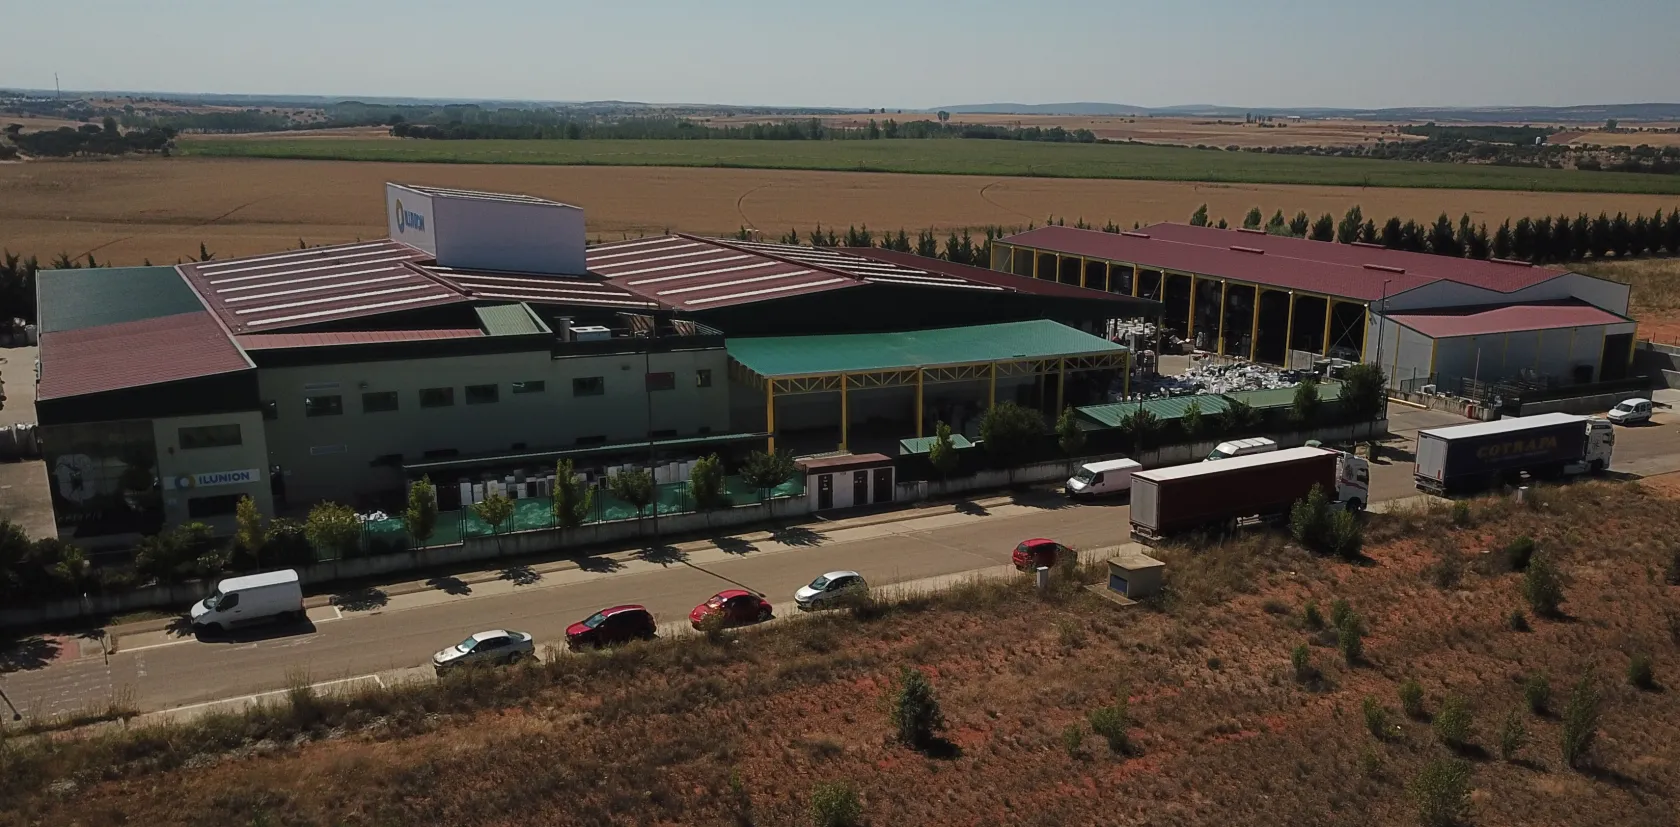 Vista aerea de la planta de ILUNION Reciclados en La Bañeza